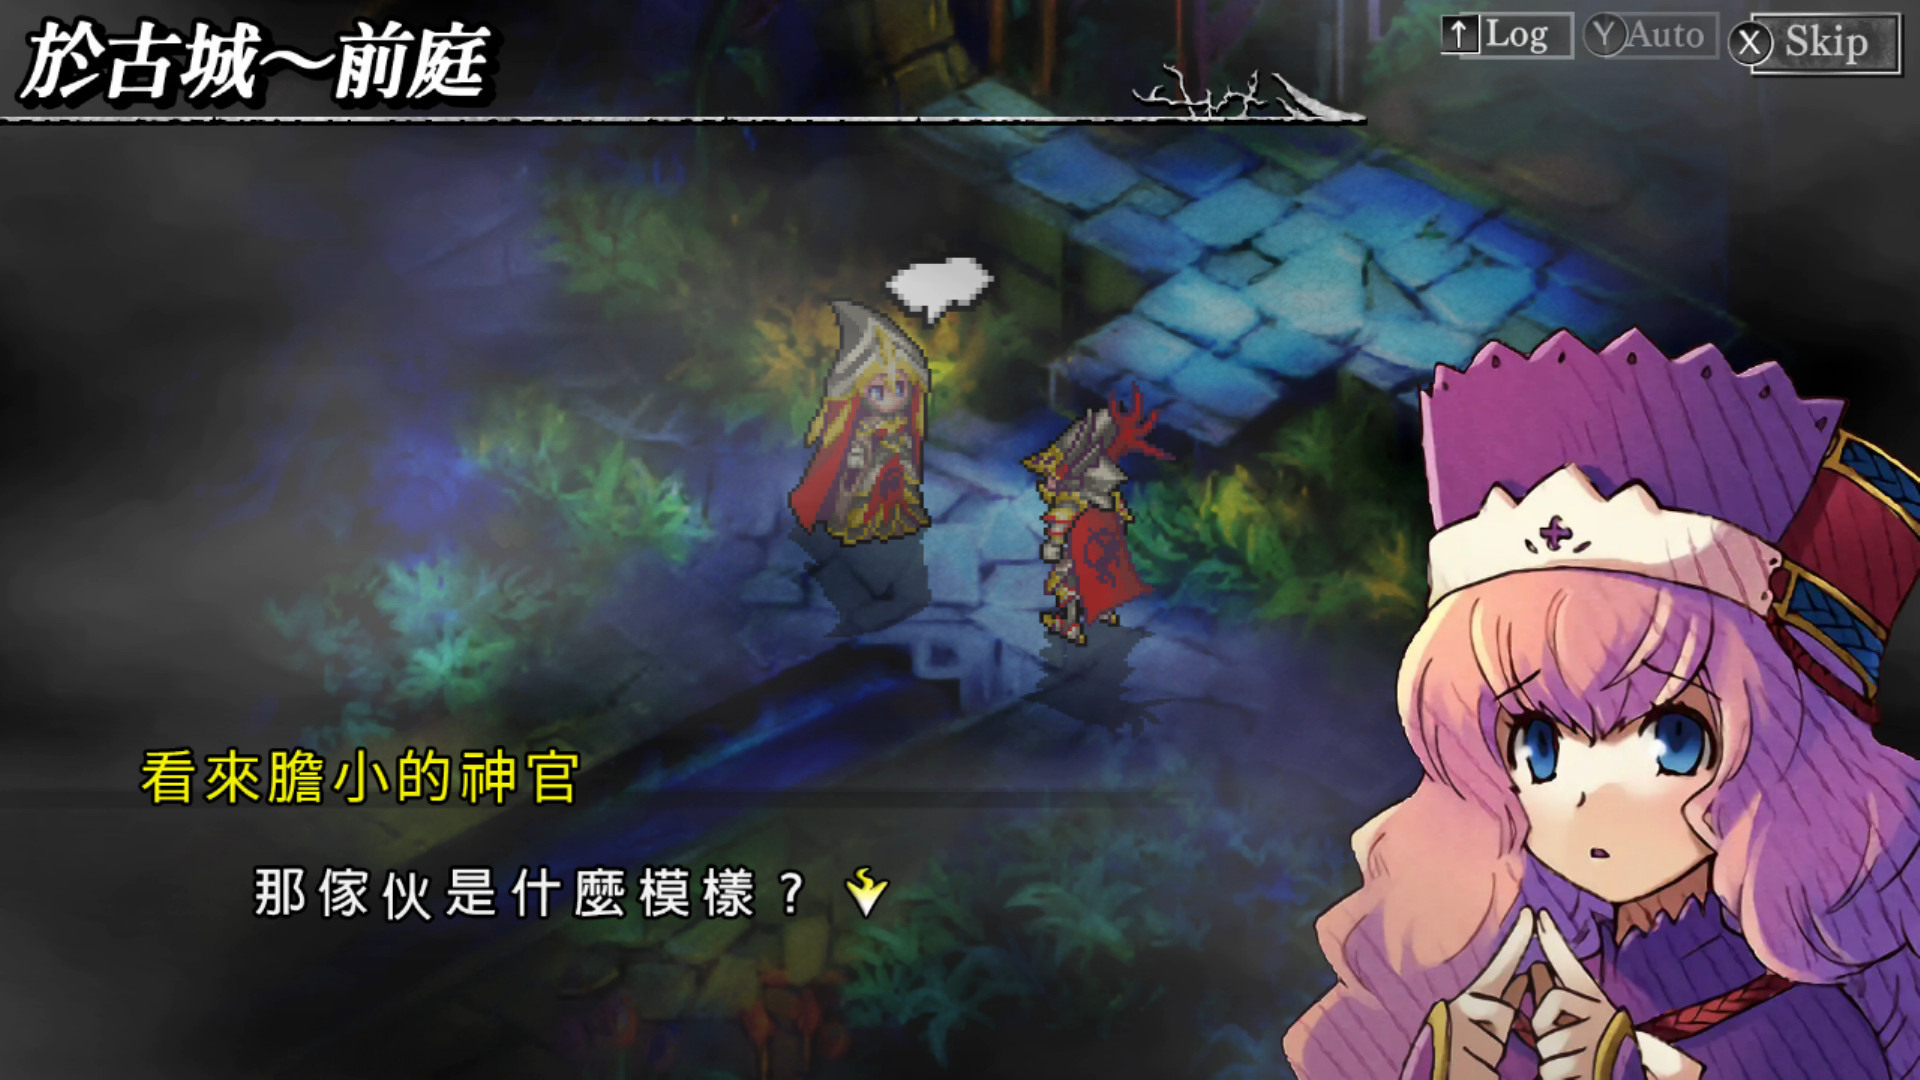 战略型弹幕 RPG《梦魇骑士团》中文数子版今日推出 同步展开上市庆祝活动